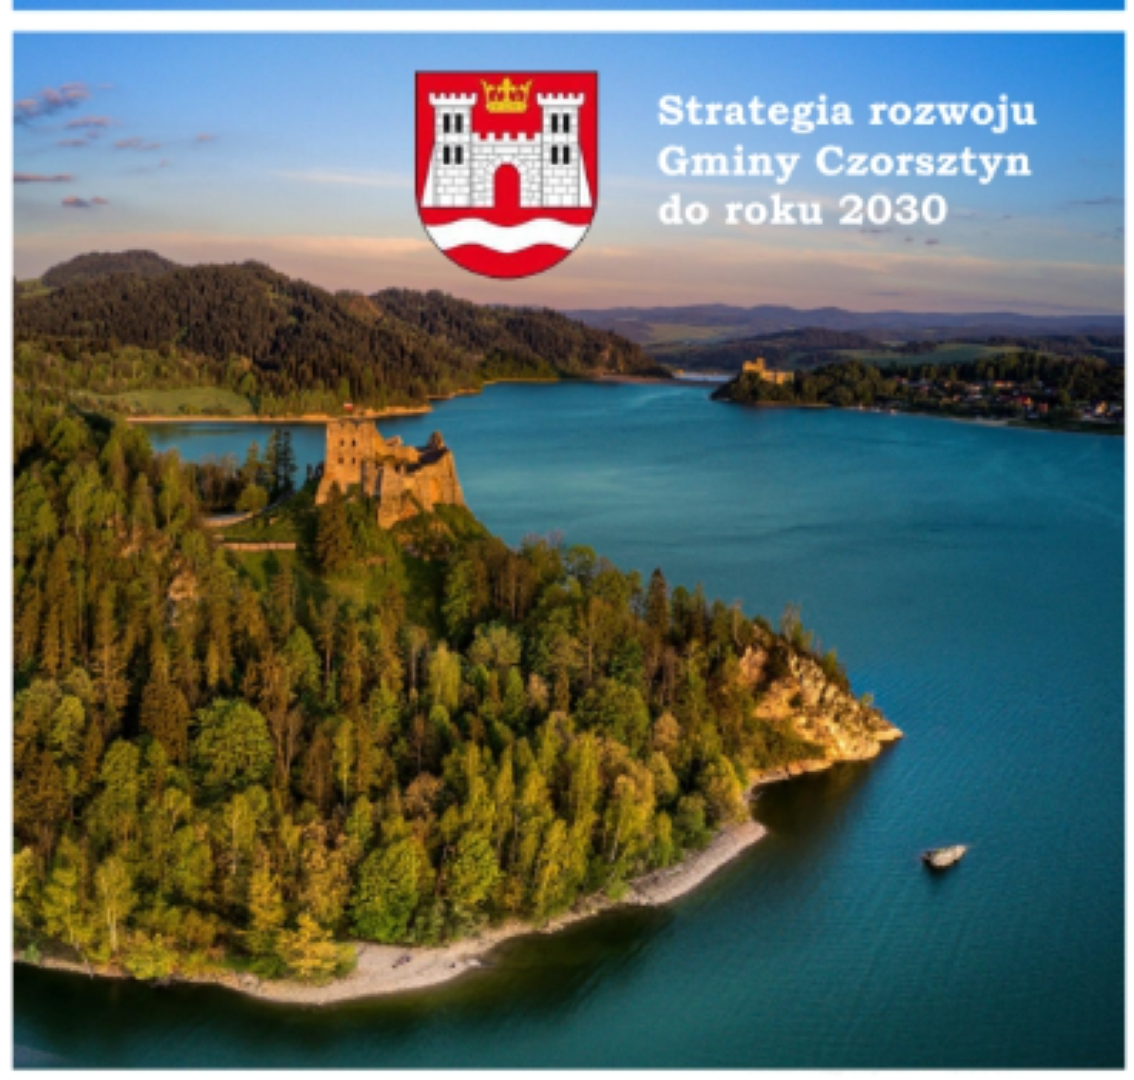 Odbyło się spotkanie konsultacyjne dotyczące projektu Strategii Rozwoju Gminy Czorsztyn do roku 2030